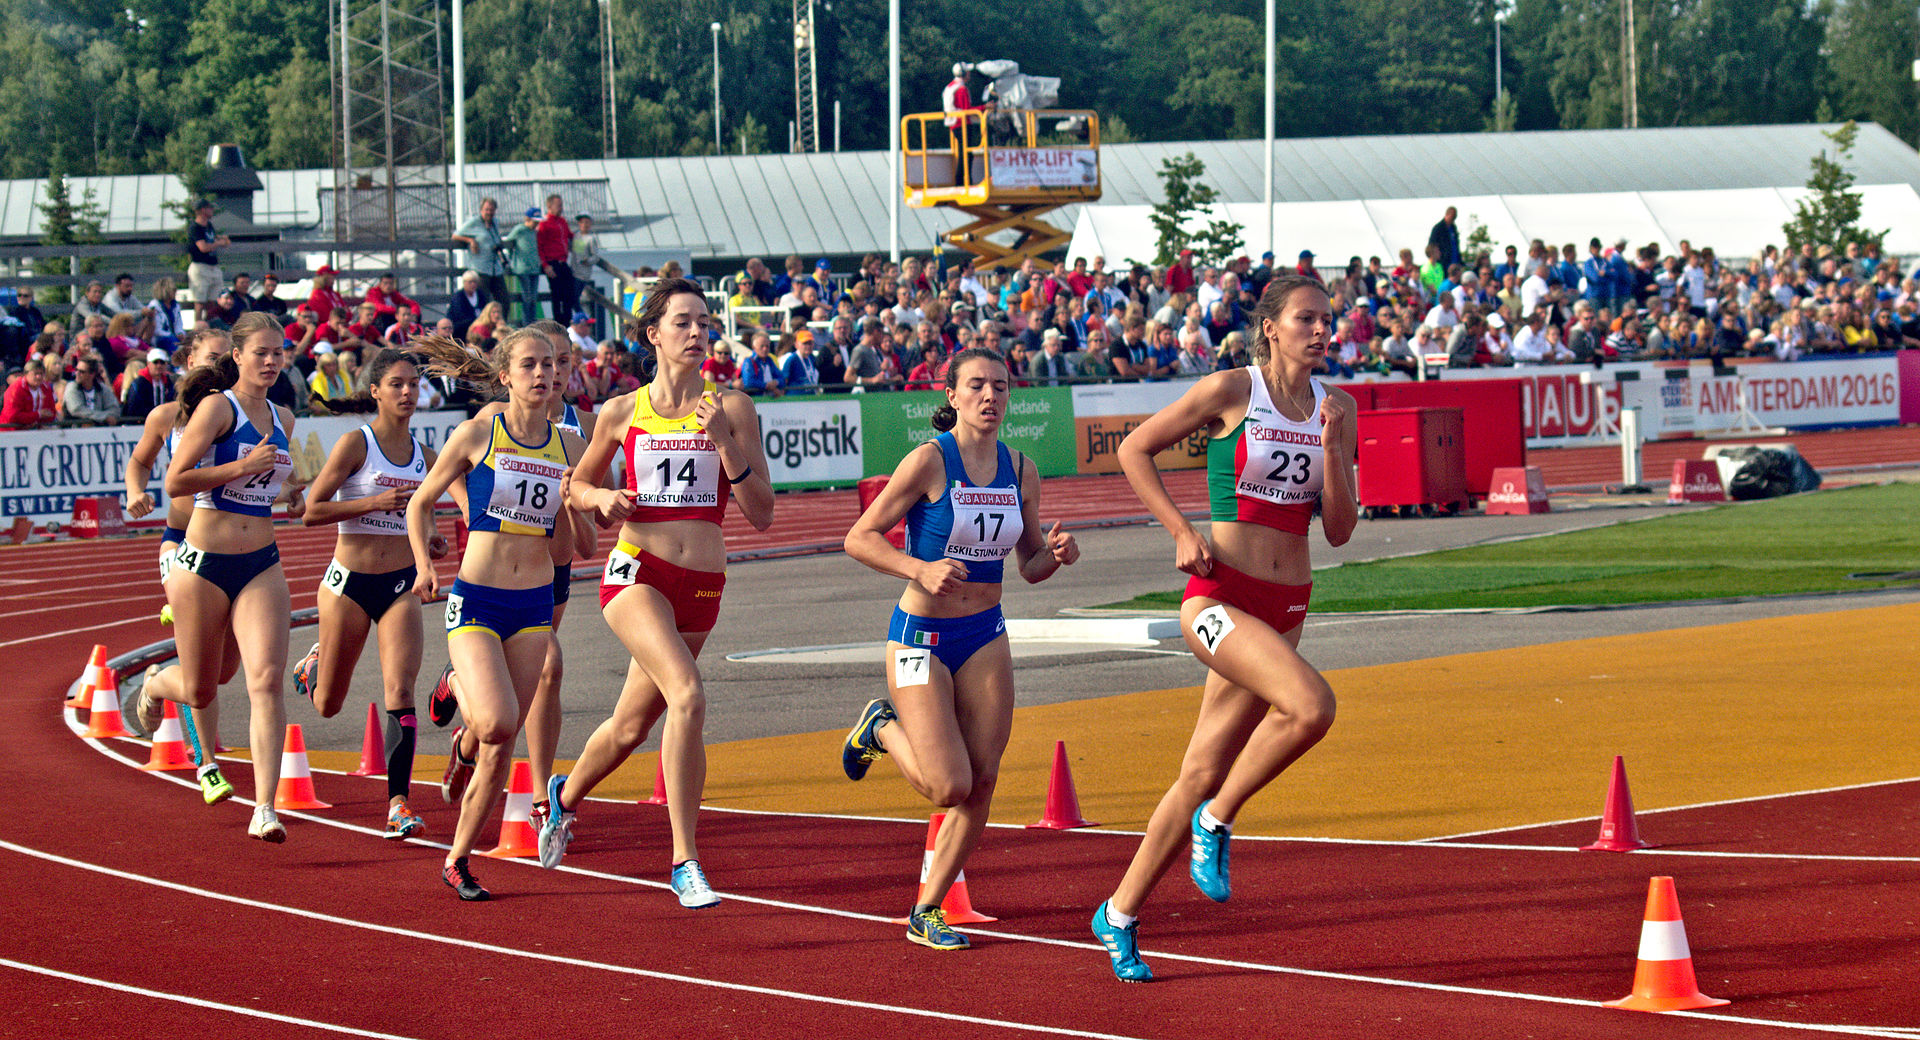 Foto: Hangsna. Damernas avslutande 800 meter i sjukampen vid vid Junioreuropamästerskapen i friidrott 2015.